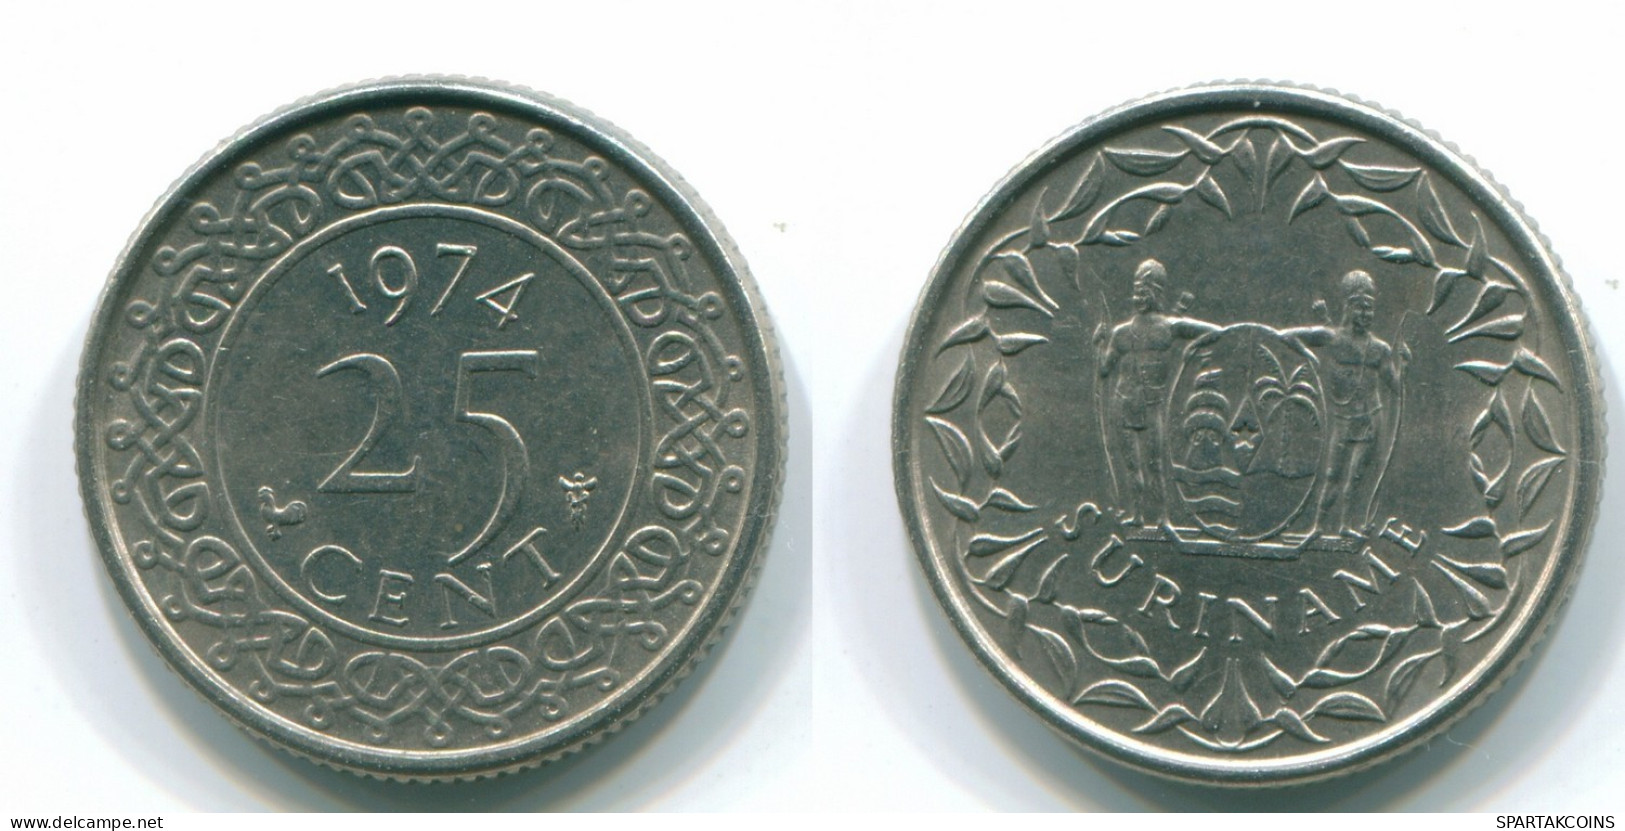 25 CENTS 1974 SURINAM NIEDERLANDE Nickel Koloniale Münze #S11241.D.A - Surinam 1975 - ...